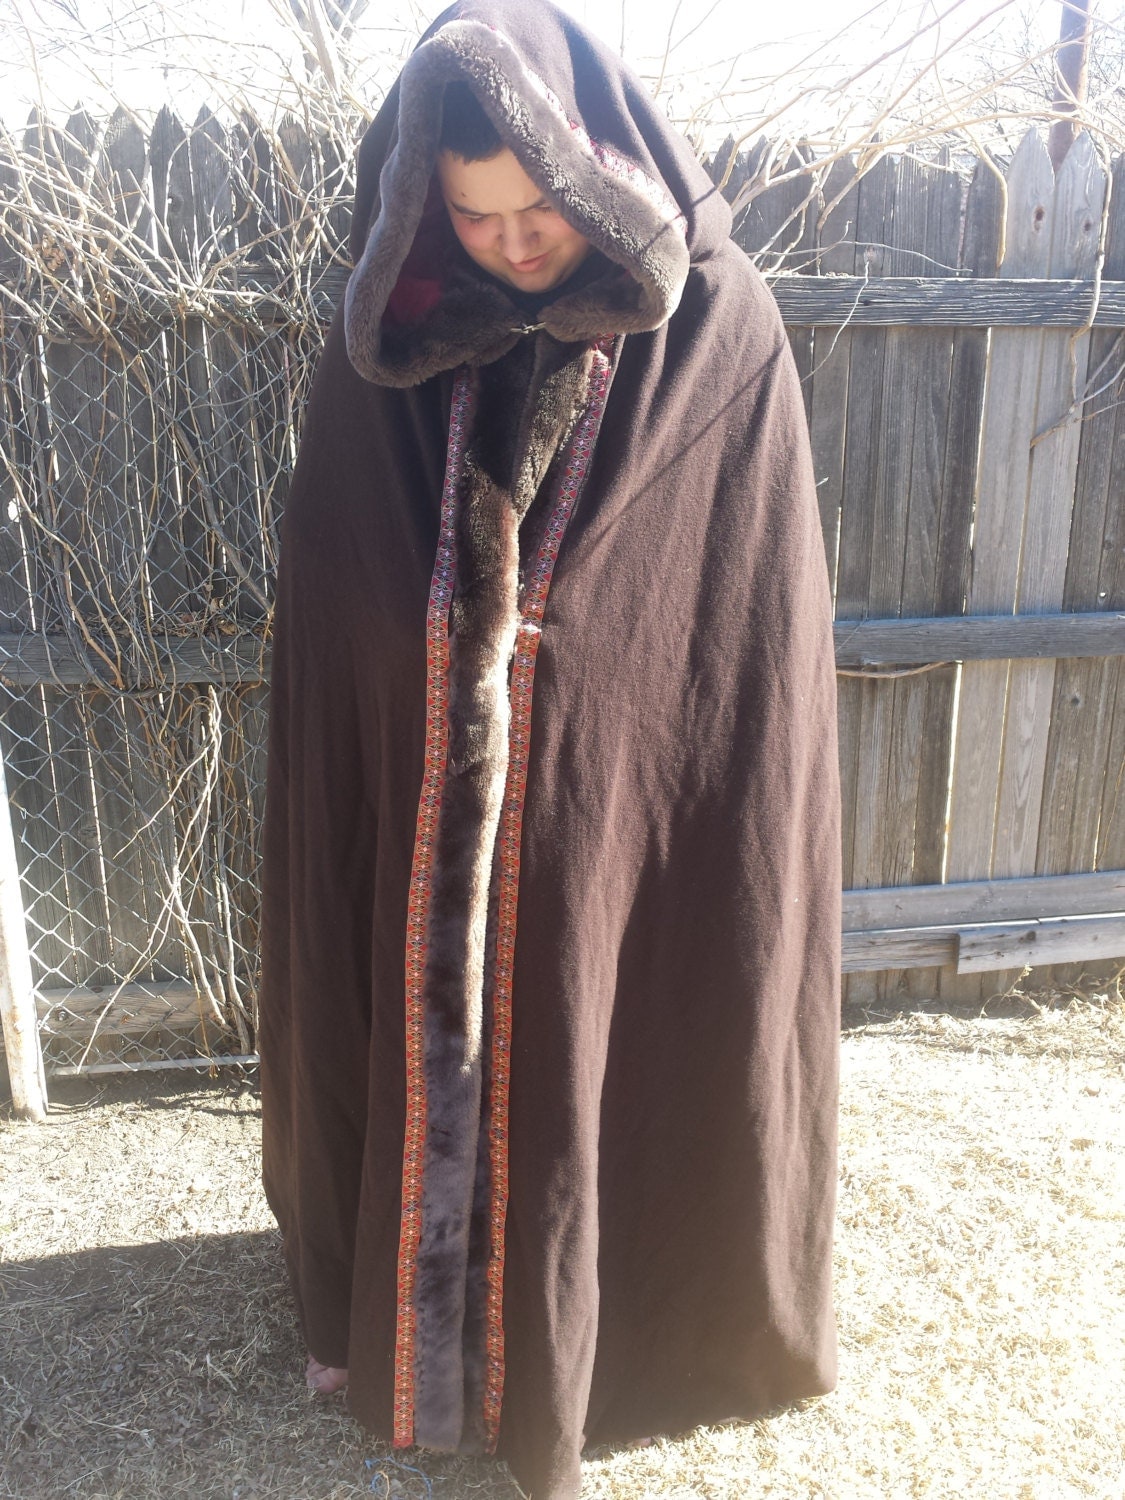 Handmade heavy cloak by CreationsbyCrystalO on Etsy